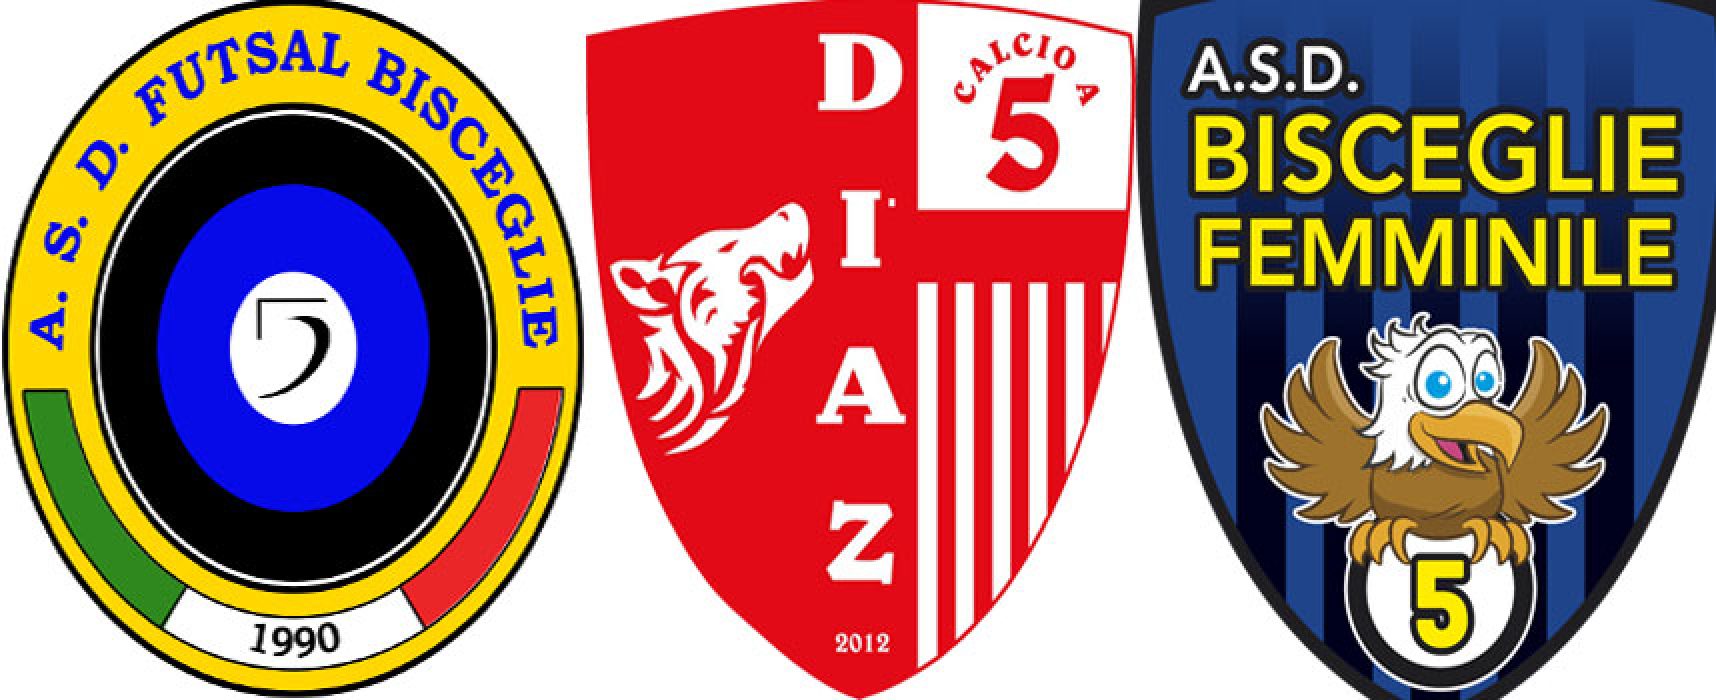 Calcio a 5, definiti i gironi di Futsal Bisceglie, Diaz e Bisceglie Femminile